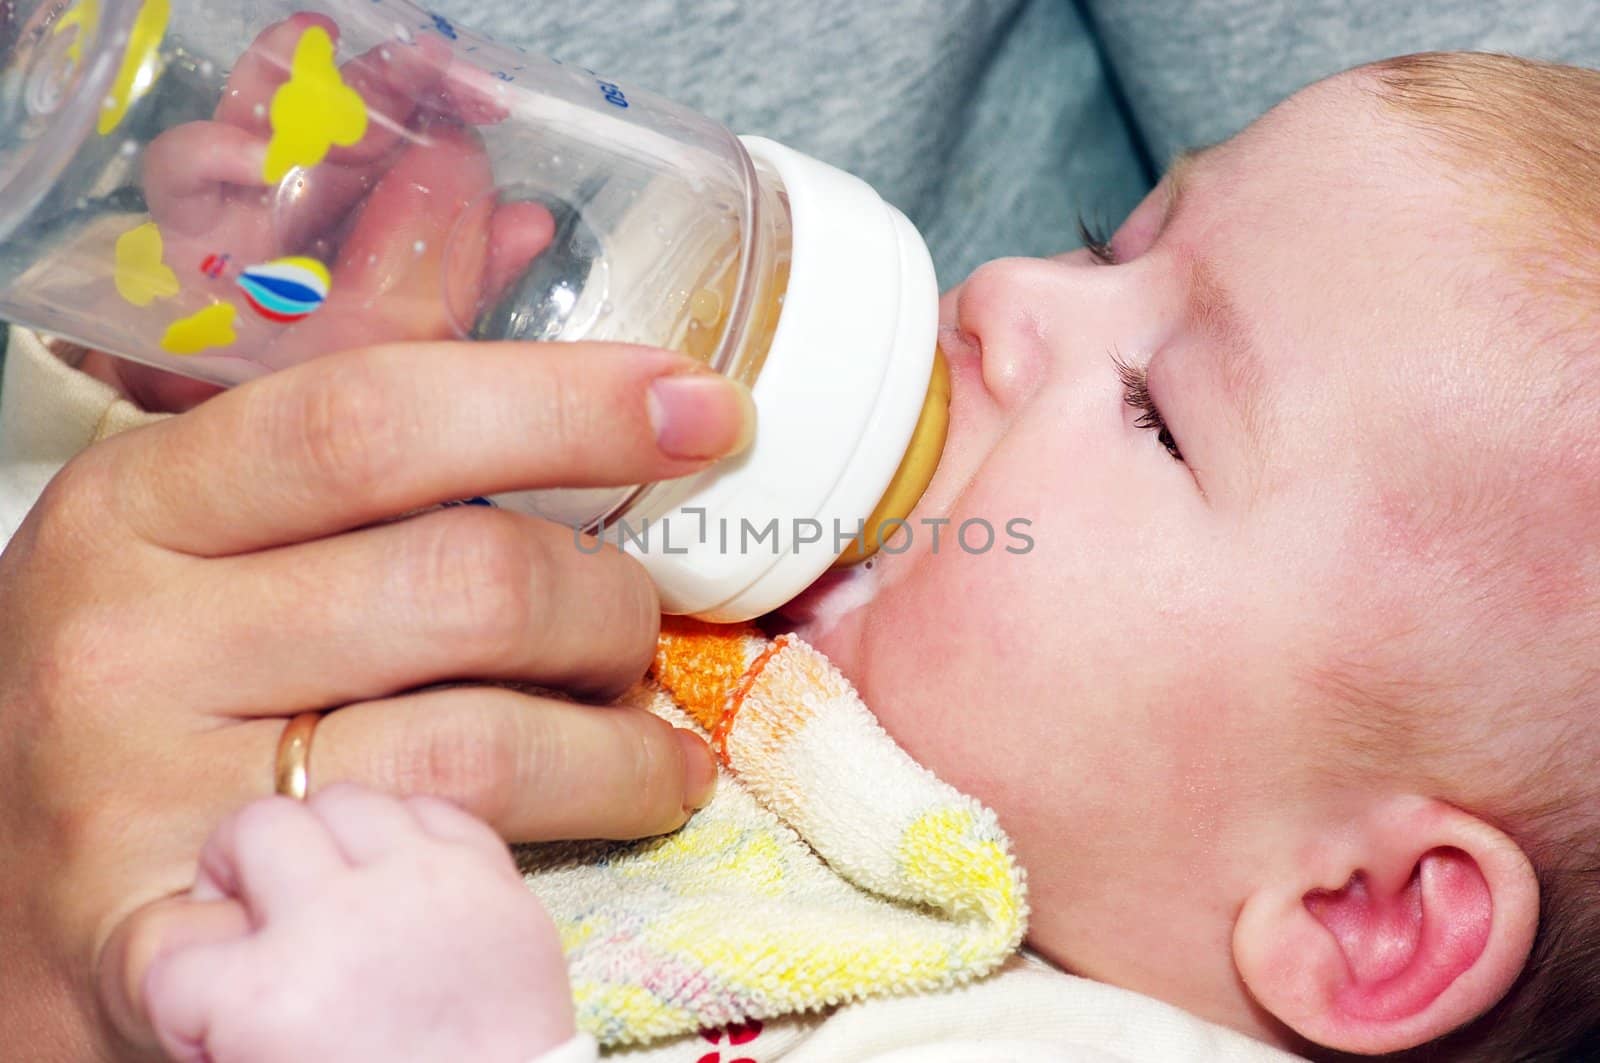 Newborn eating. Bottle of milk.